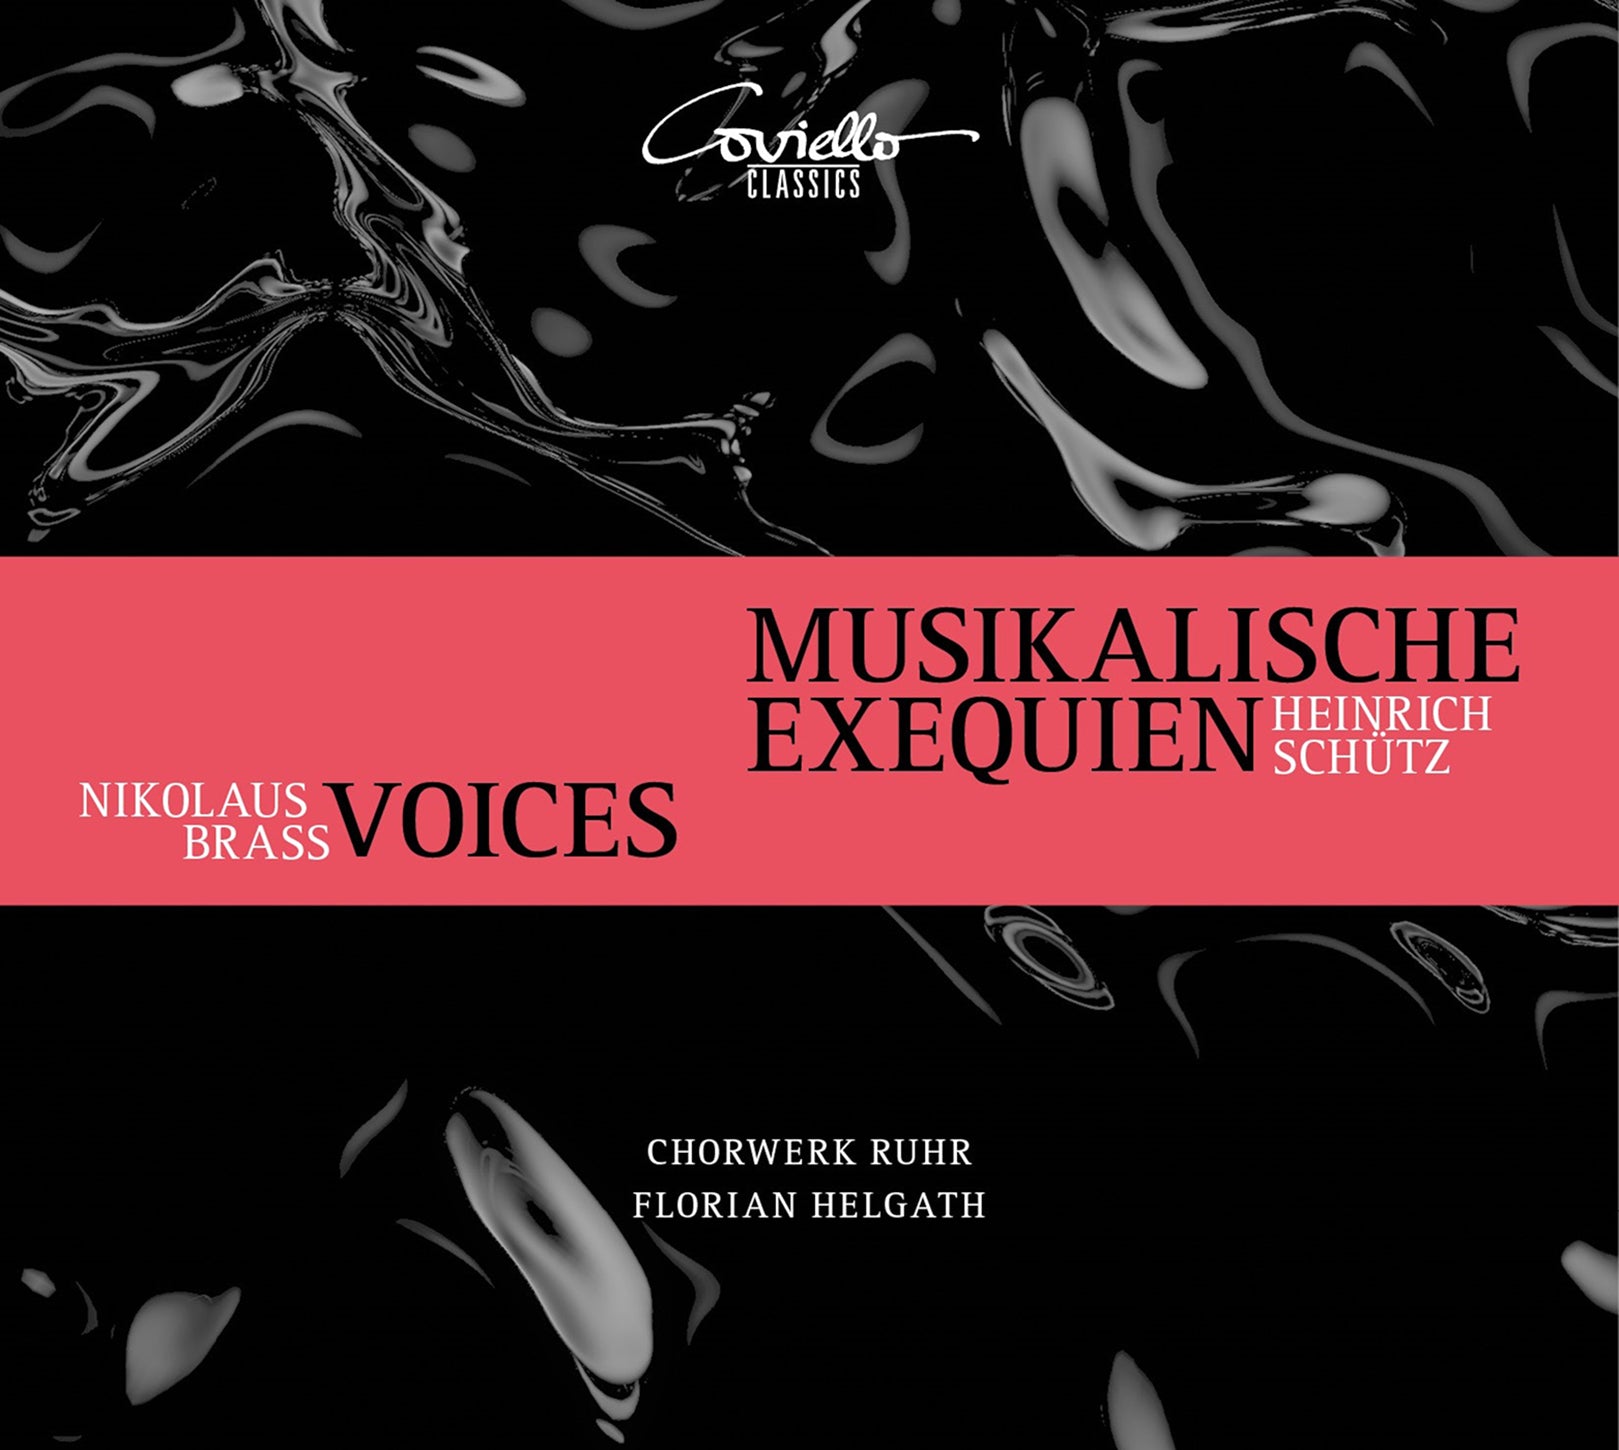 Schütz & N. Brass: Musikalische Exequien - Voices 1 & 2 / Helgath, Chorwerk Ruhr